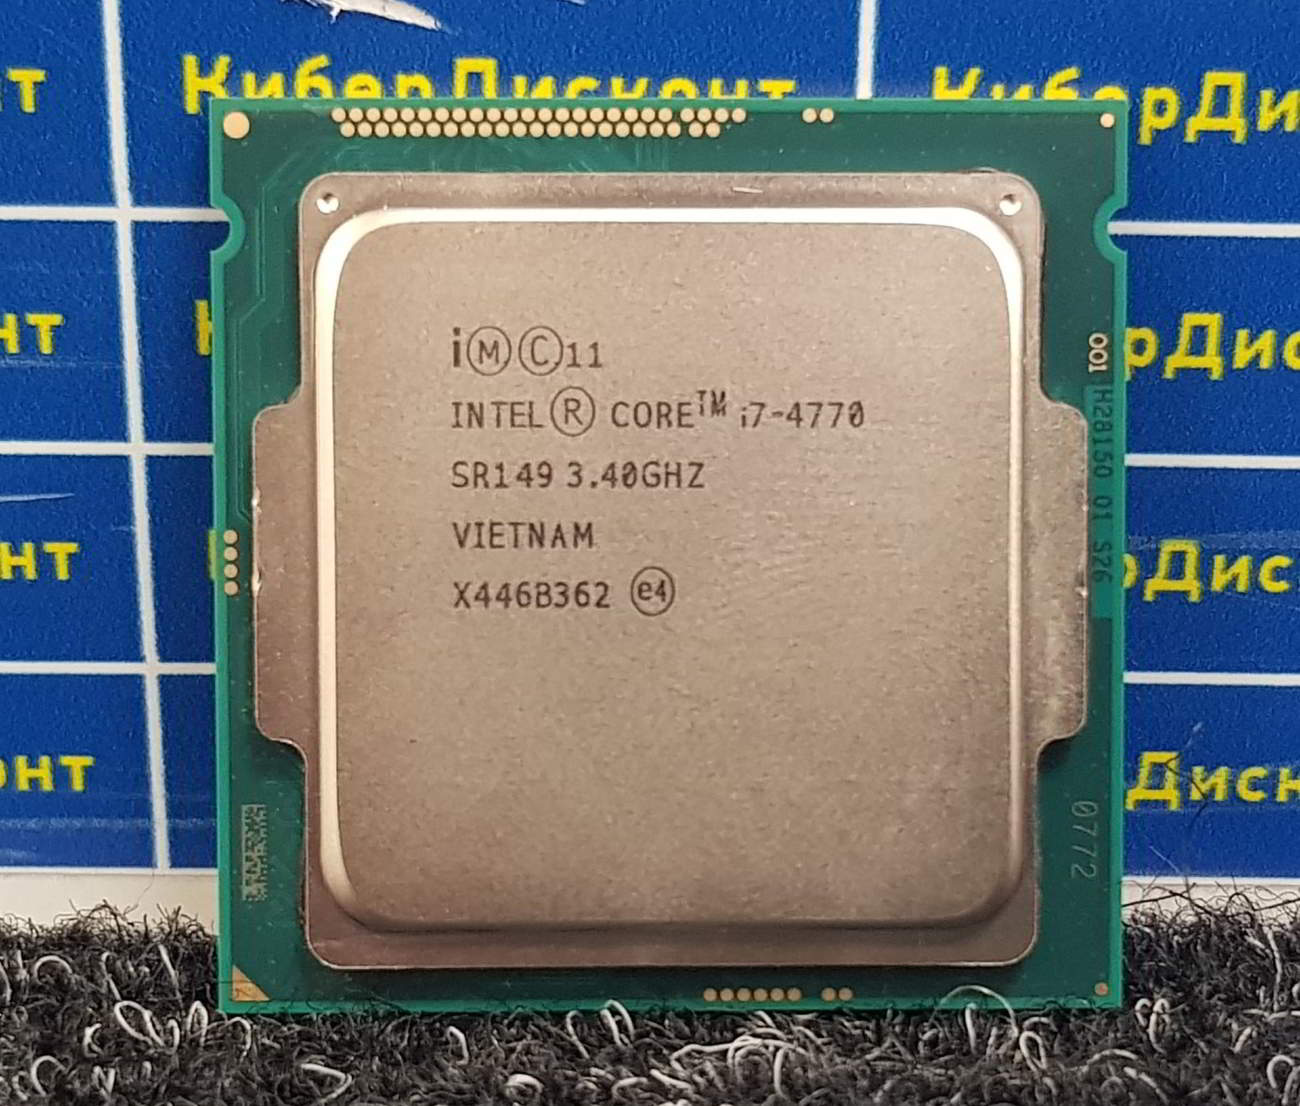 Intel Core i7-4770 купить бу с рук